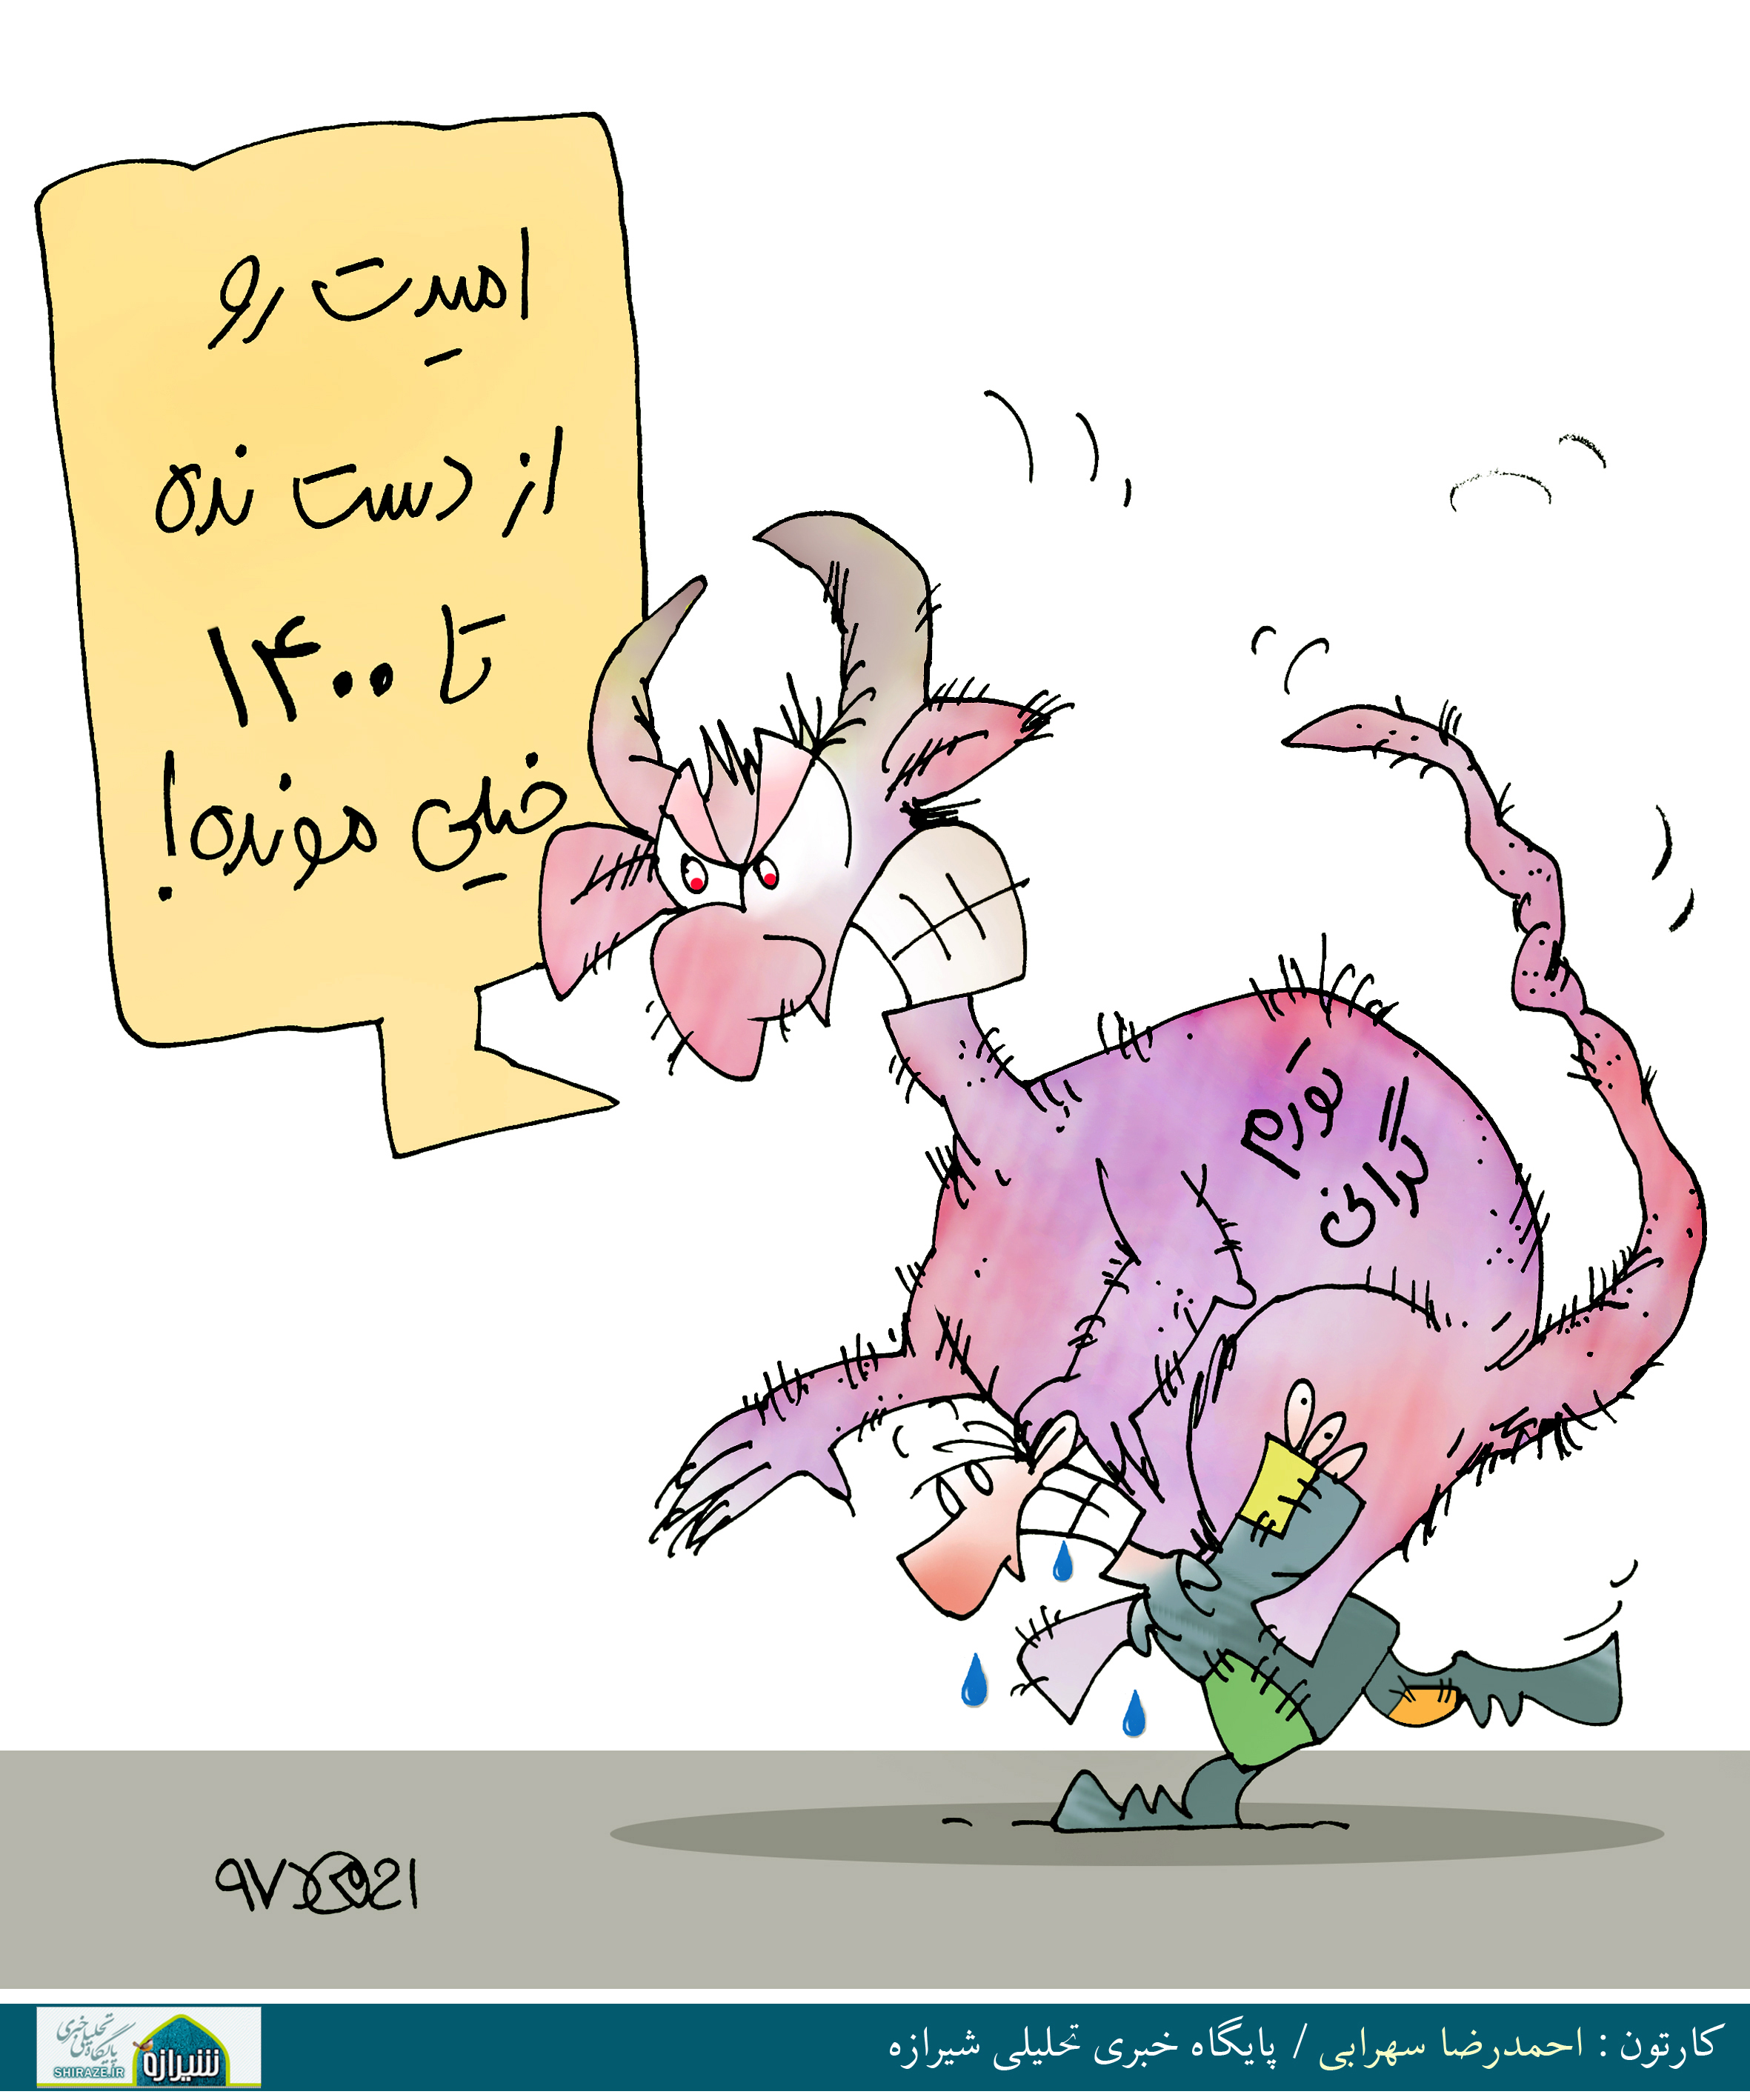 کاریکاتور شیرازه؛ امیدت رو از دست نده تا 1400 خیلی مونده!